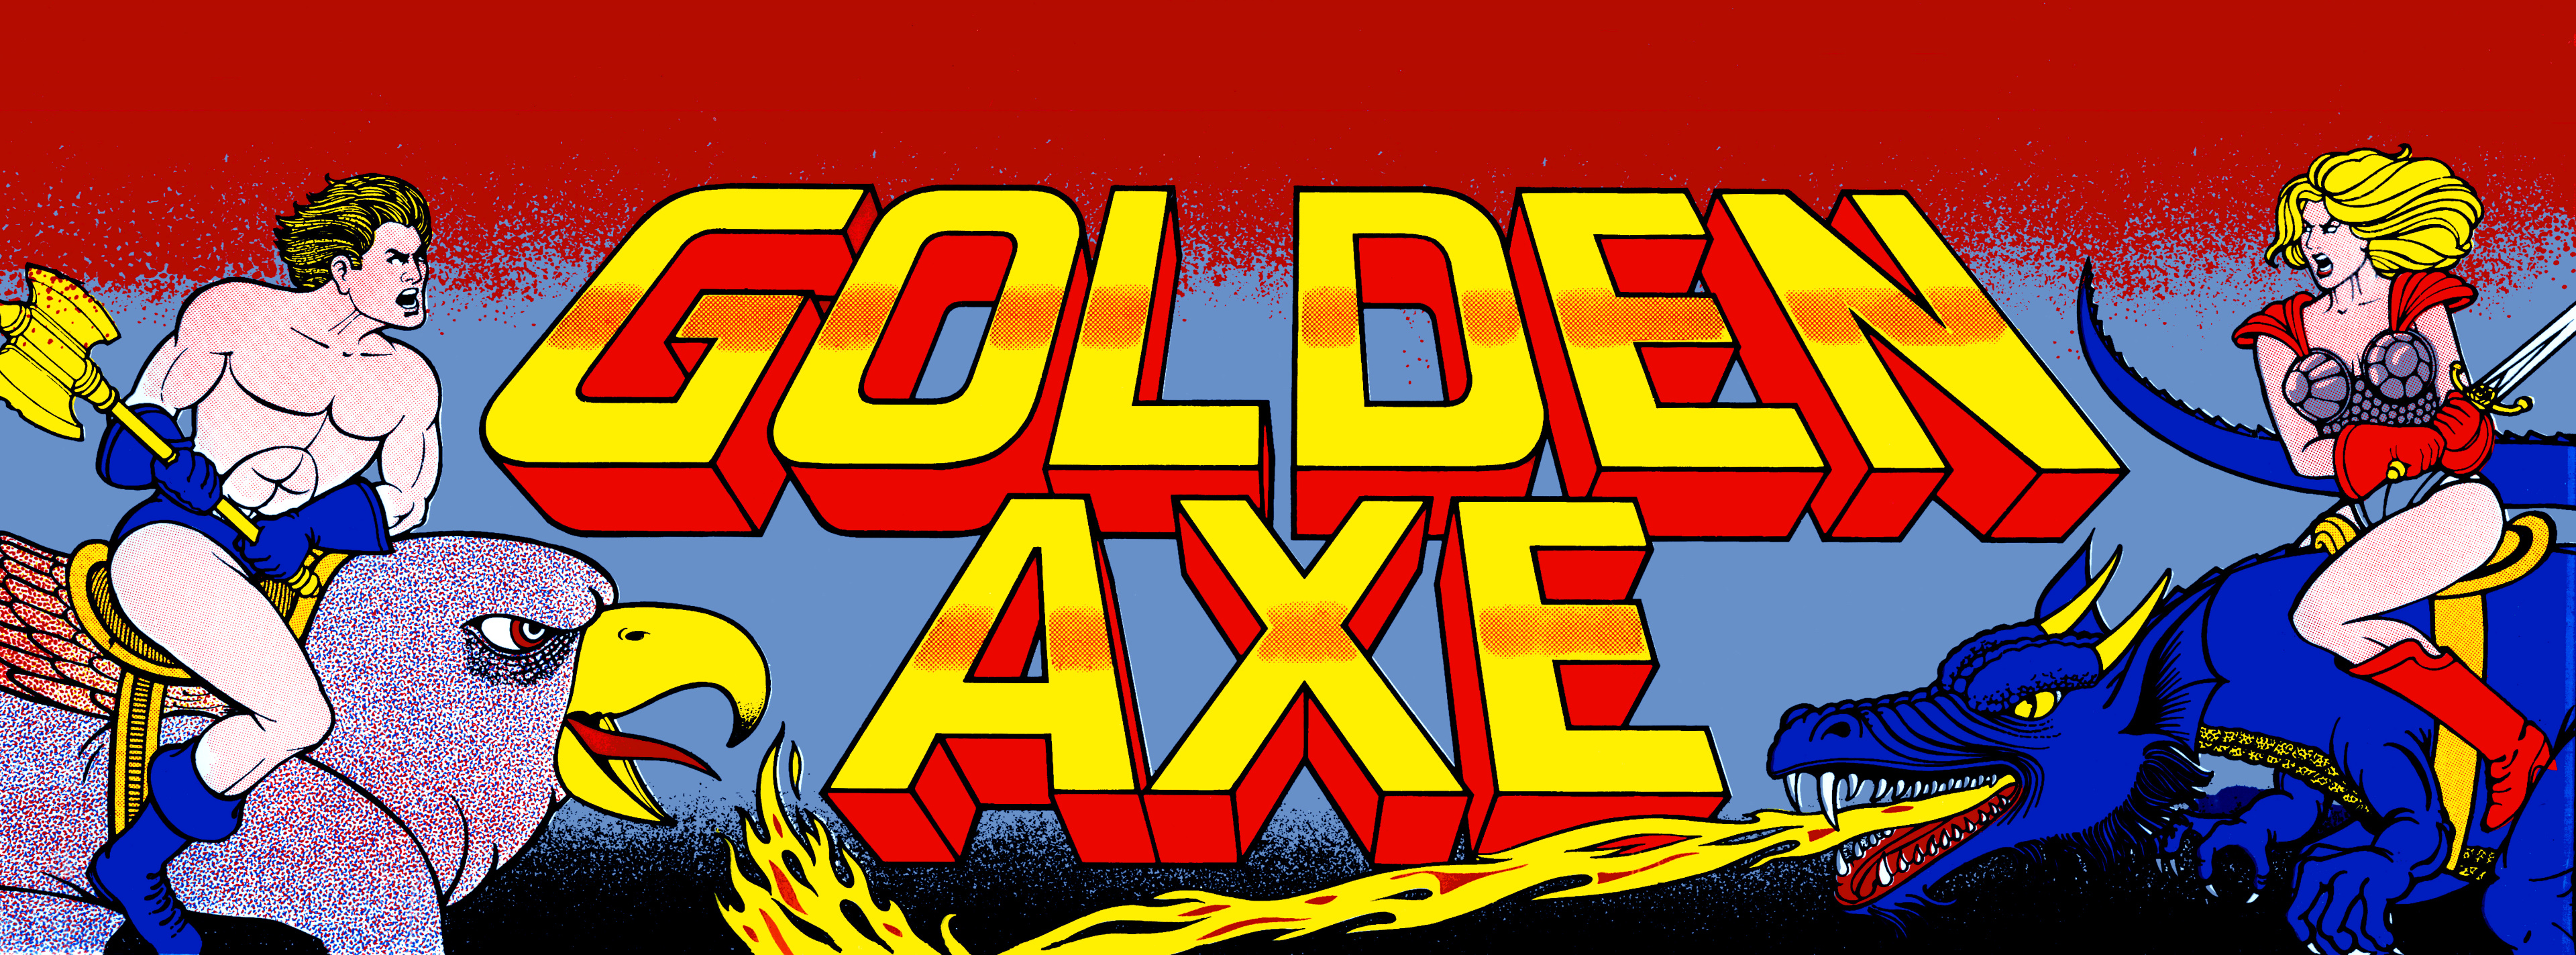 Steam golden axe фото 51